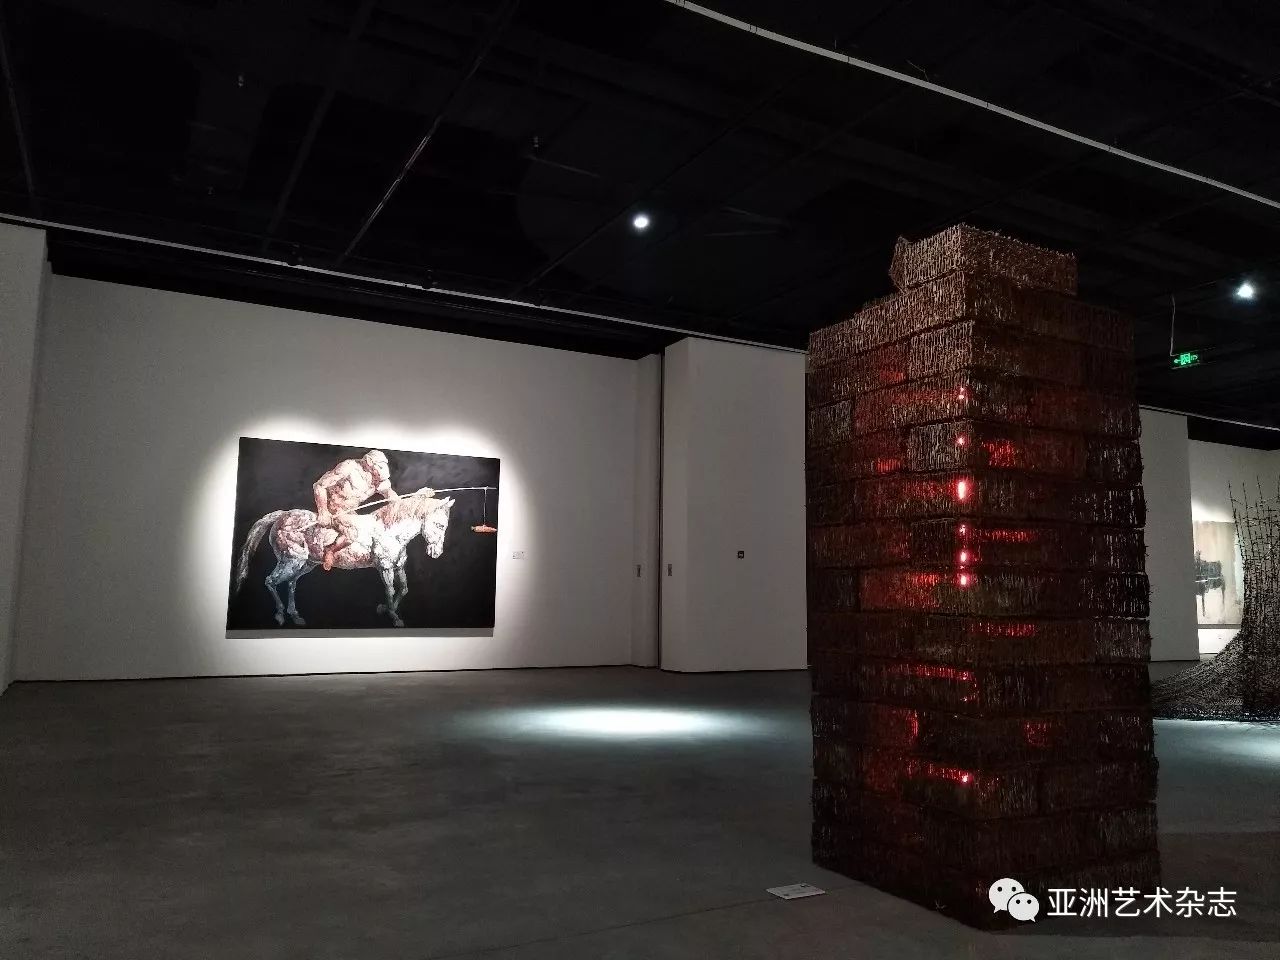 绵延:第十一届佛罗伦萨双年展中国当代艺术主题展在北京汉威国际艺术